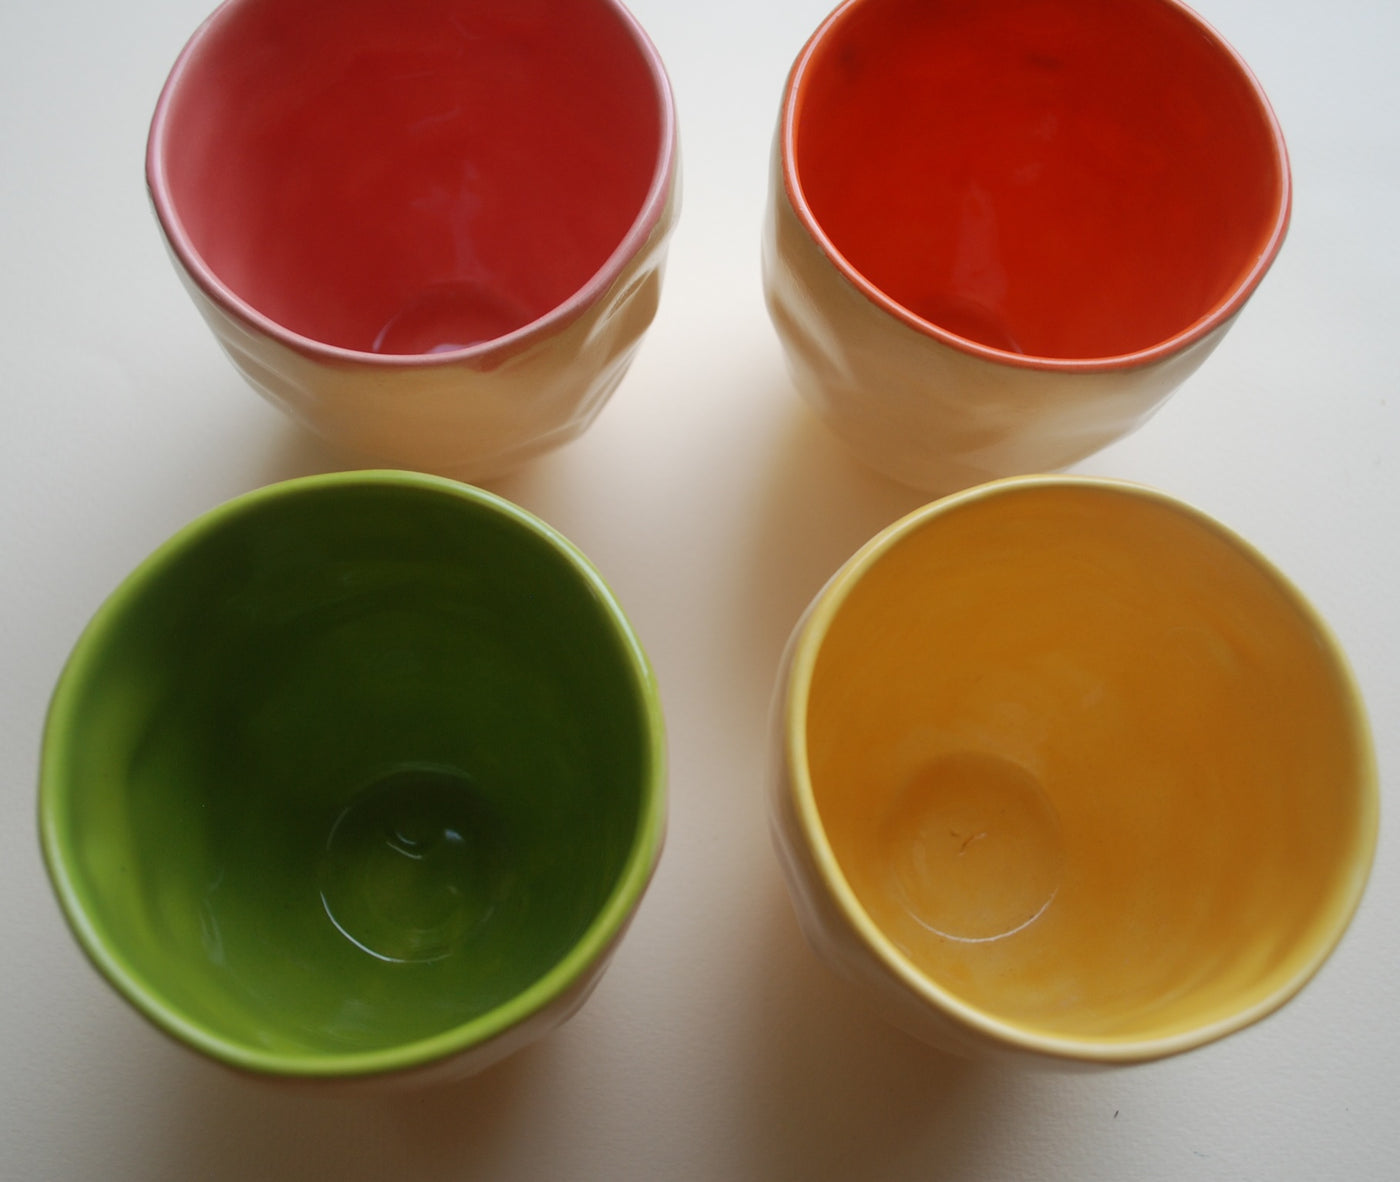 Joyful Handmade Cups